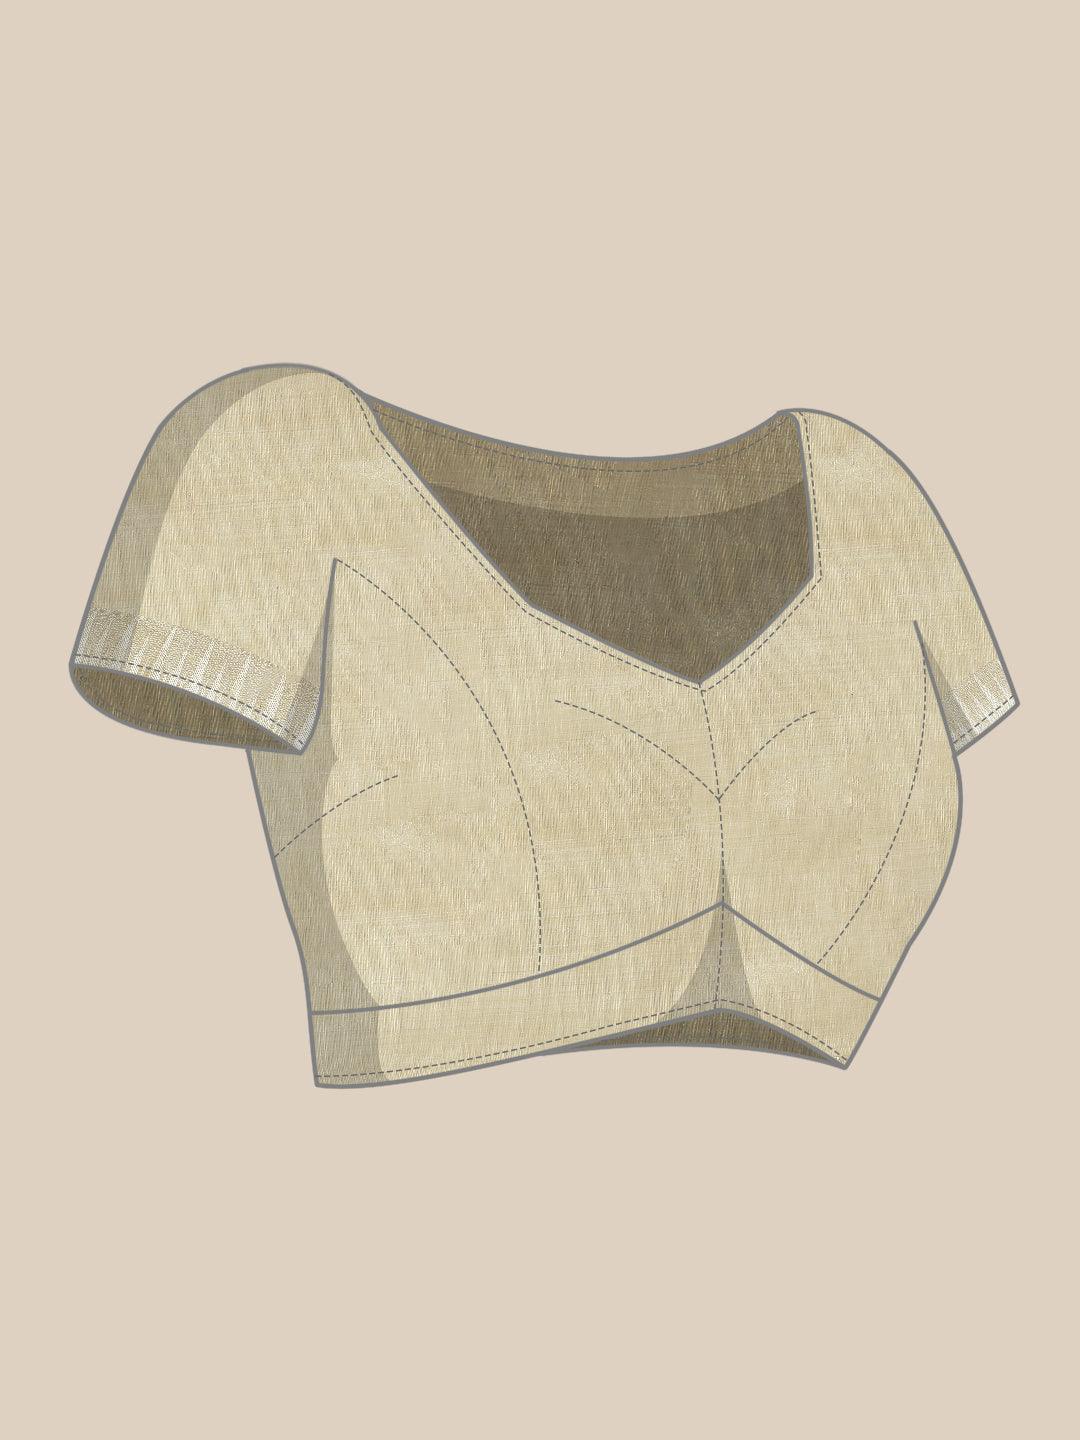 Beige Woven Design Silk Blend Saree - Libas